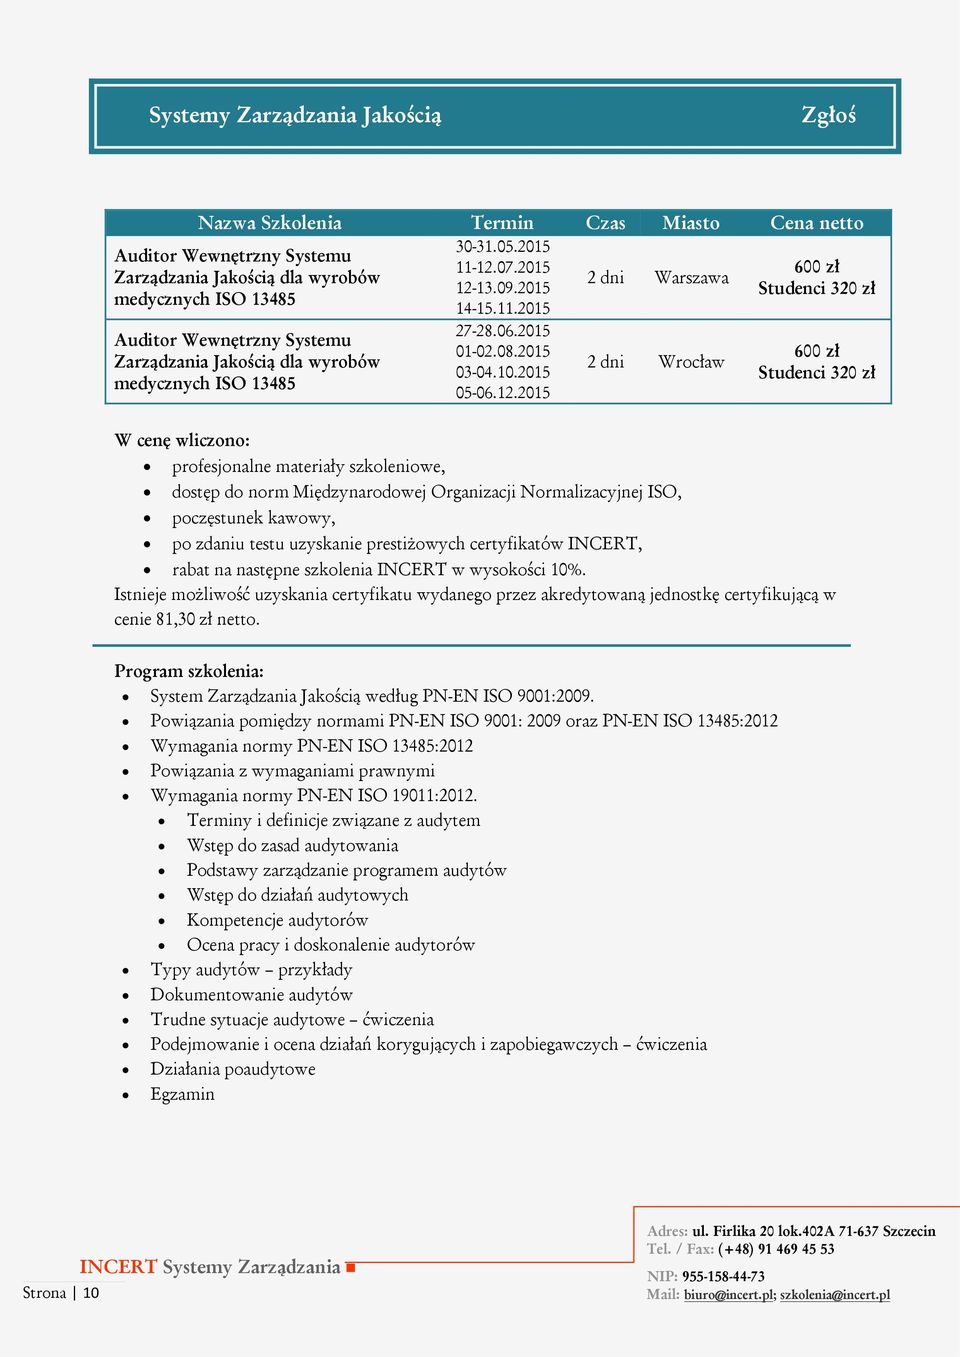 2015 Zarządzania Jakością dla wyrobów medycznych ISO 13485 dostęp do norm Międzynarodowej Organizacji Normalizacyjnej ISO, poczęstunek kawowy, 27-28.06.2015 01-02.08.2015 03-04.10.2015 05-06.12.